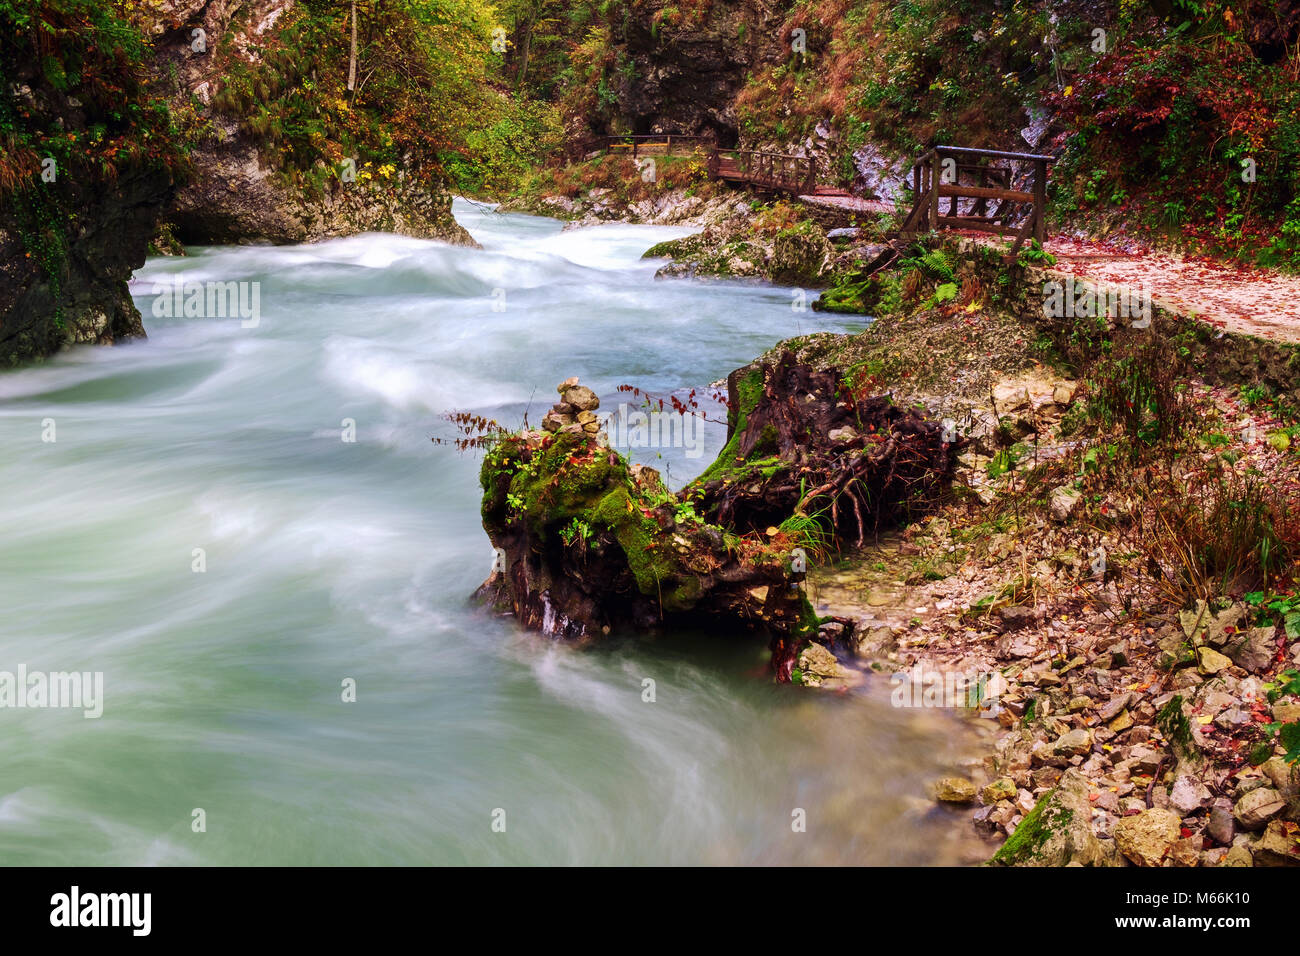 Splendida gola Gorge canyon al fiume curlicue e bellissimi colori autunnali e vicino al lago di Bled in Slovenia,l'Europa Foto Stock